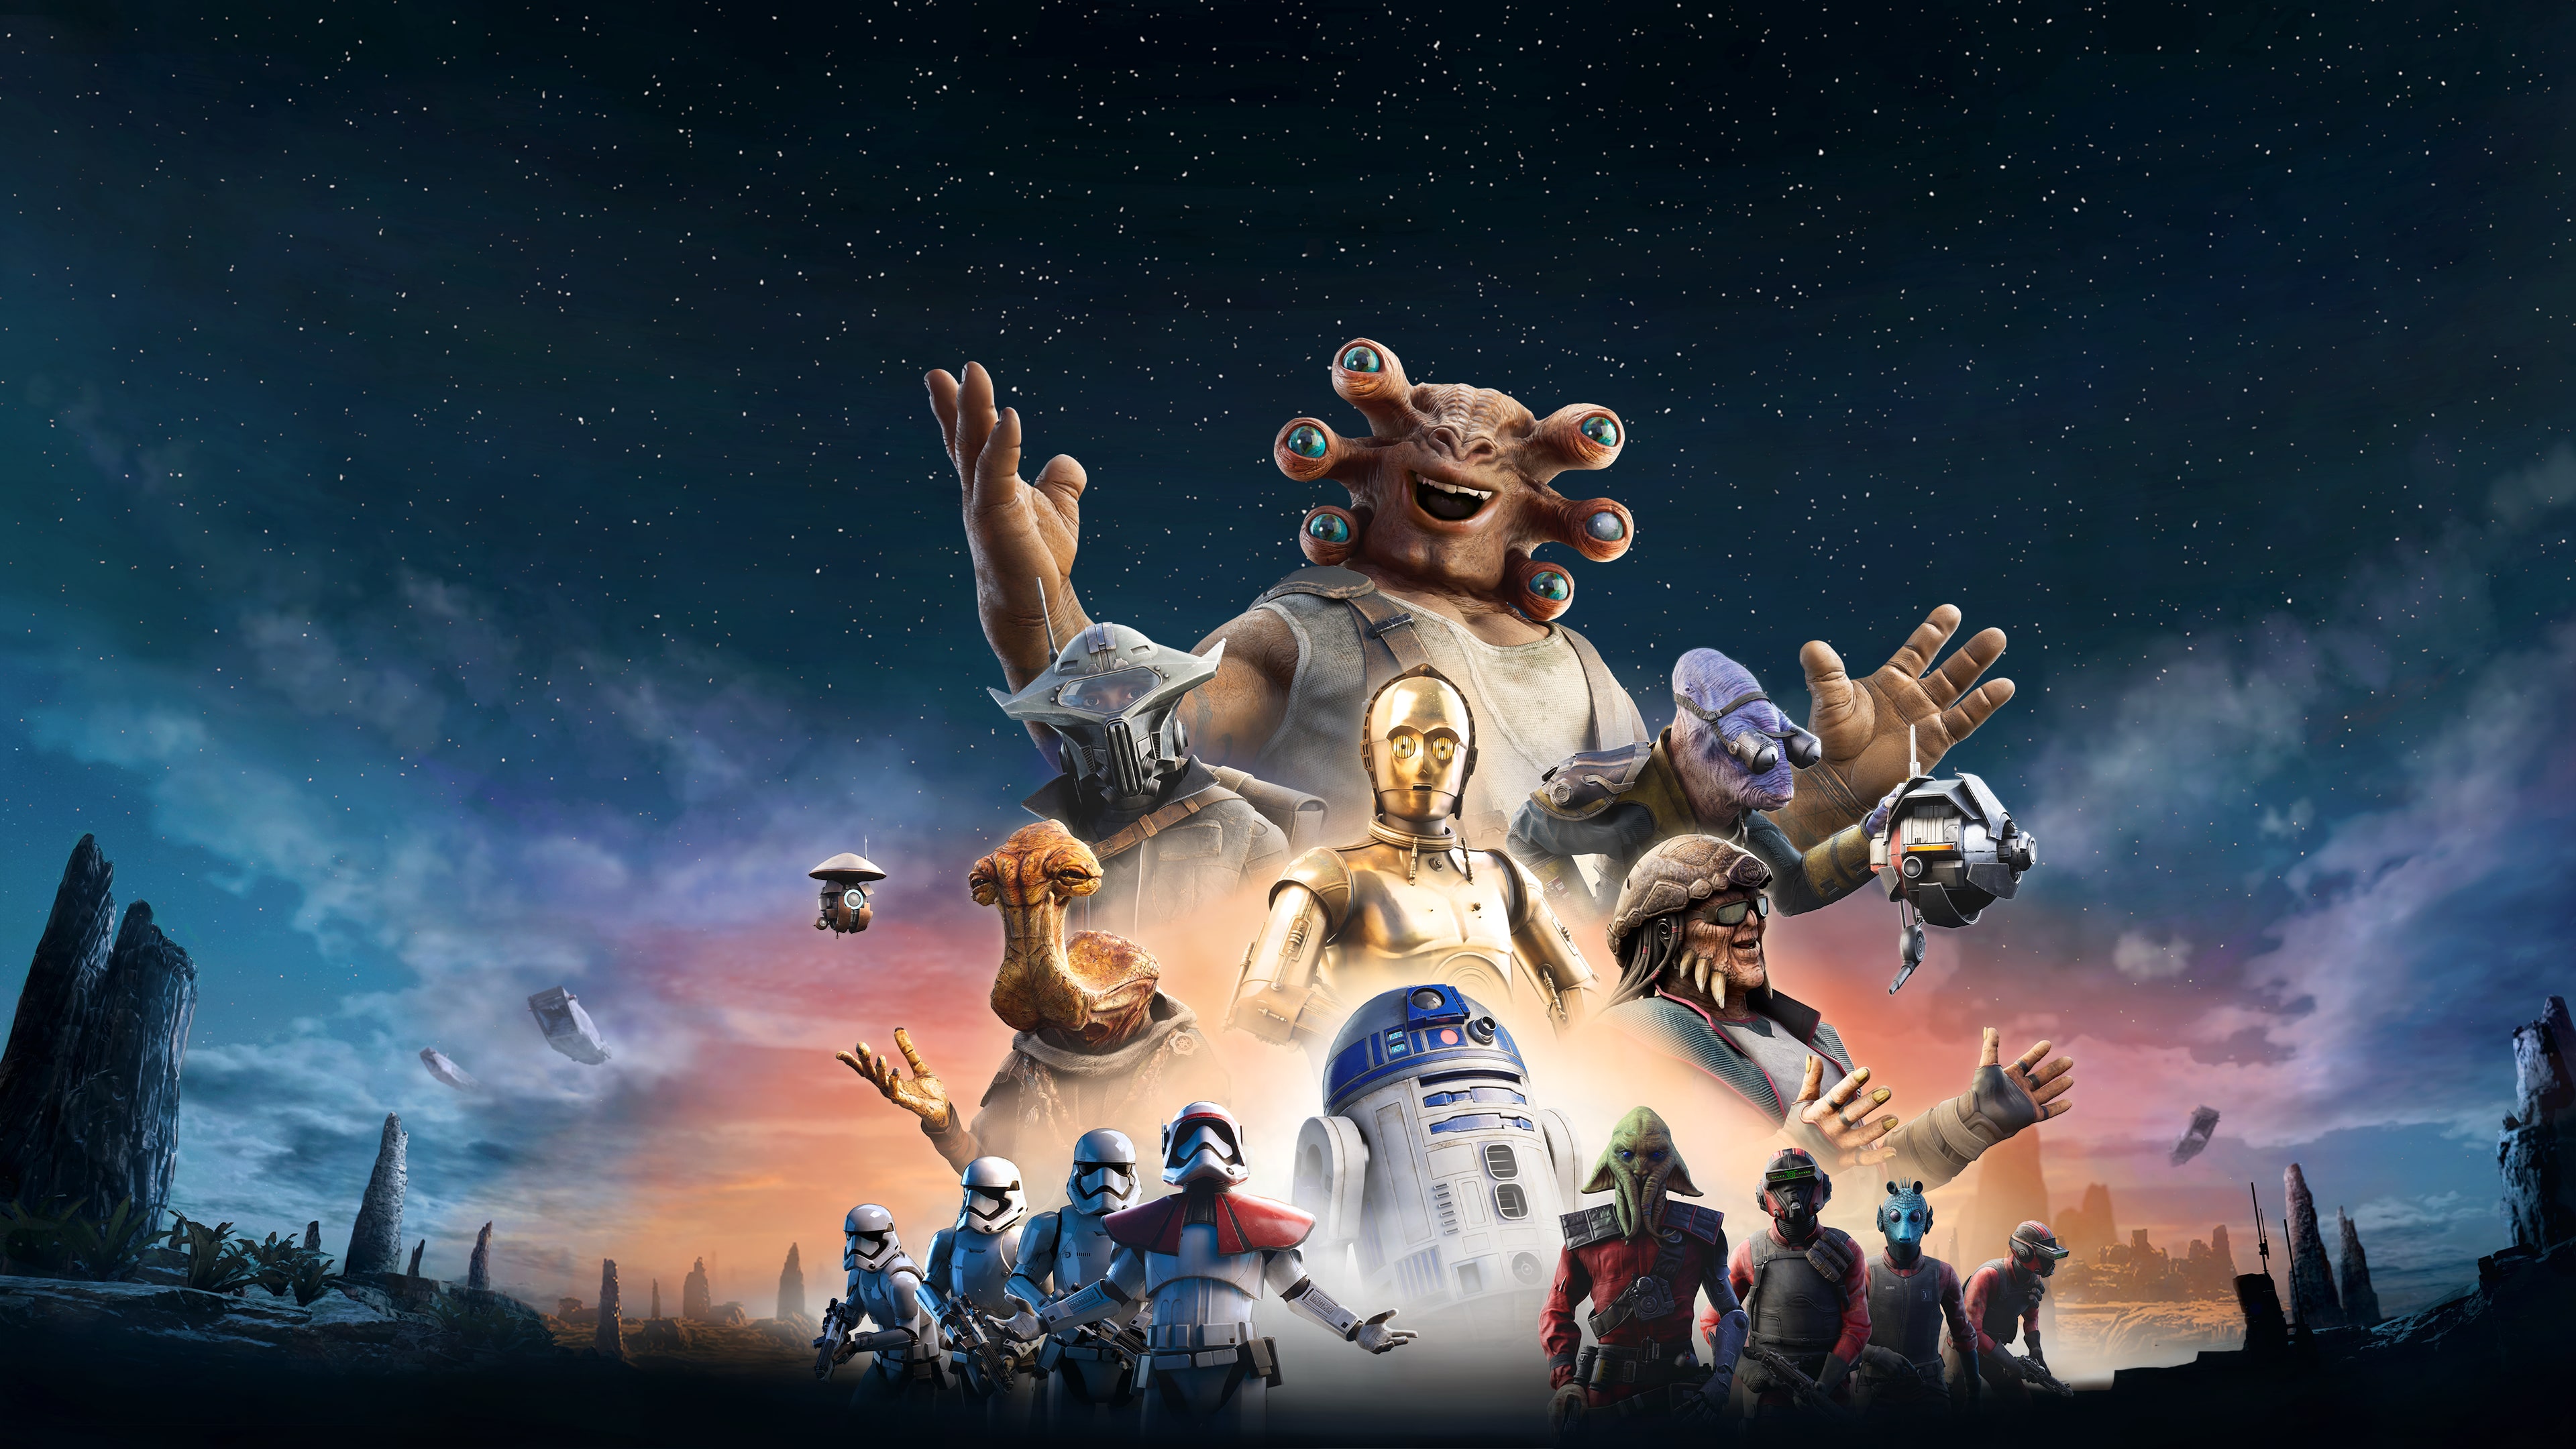 "Star Wars: Tales from the Galaxy's Edge - Enhanced Edition 스타워즈: 갤럭시 엣지 이야기 - 개선판" (한국어, 영어, 일본어)